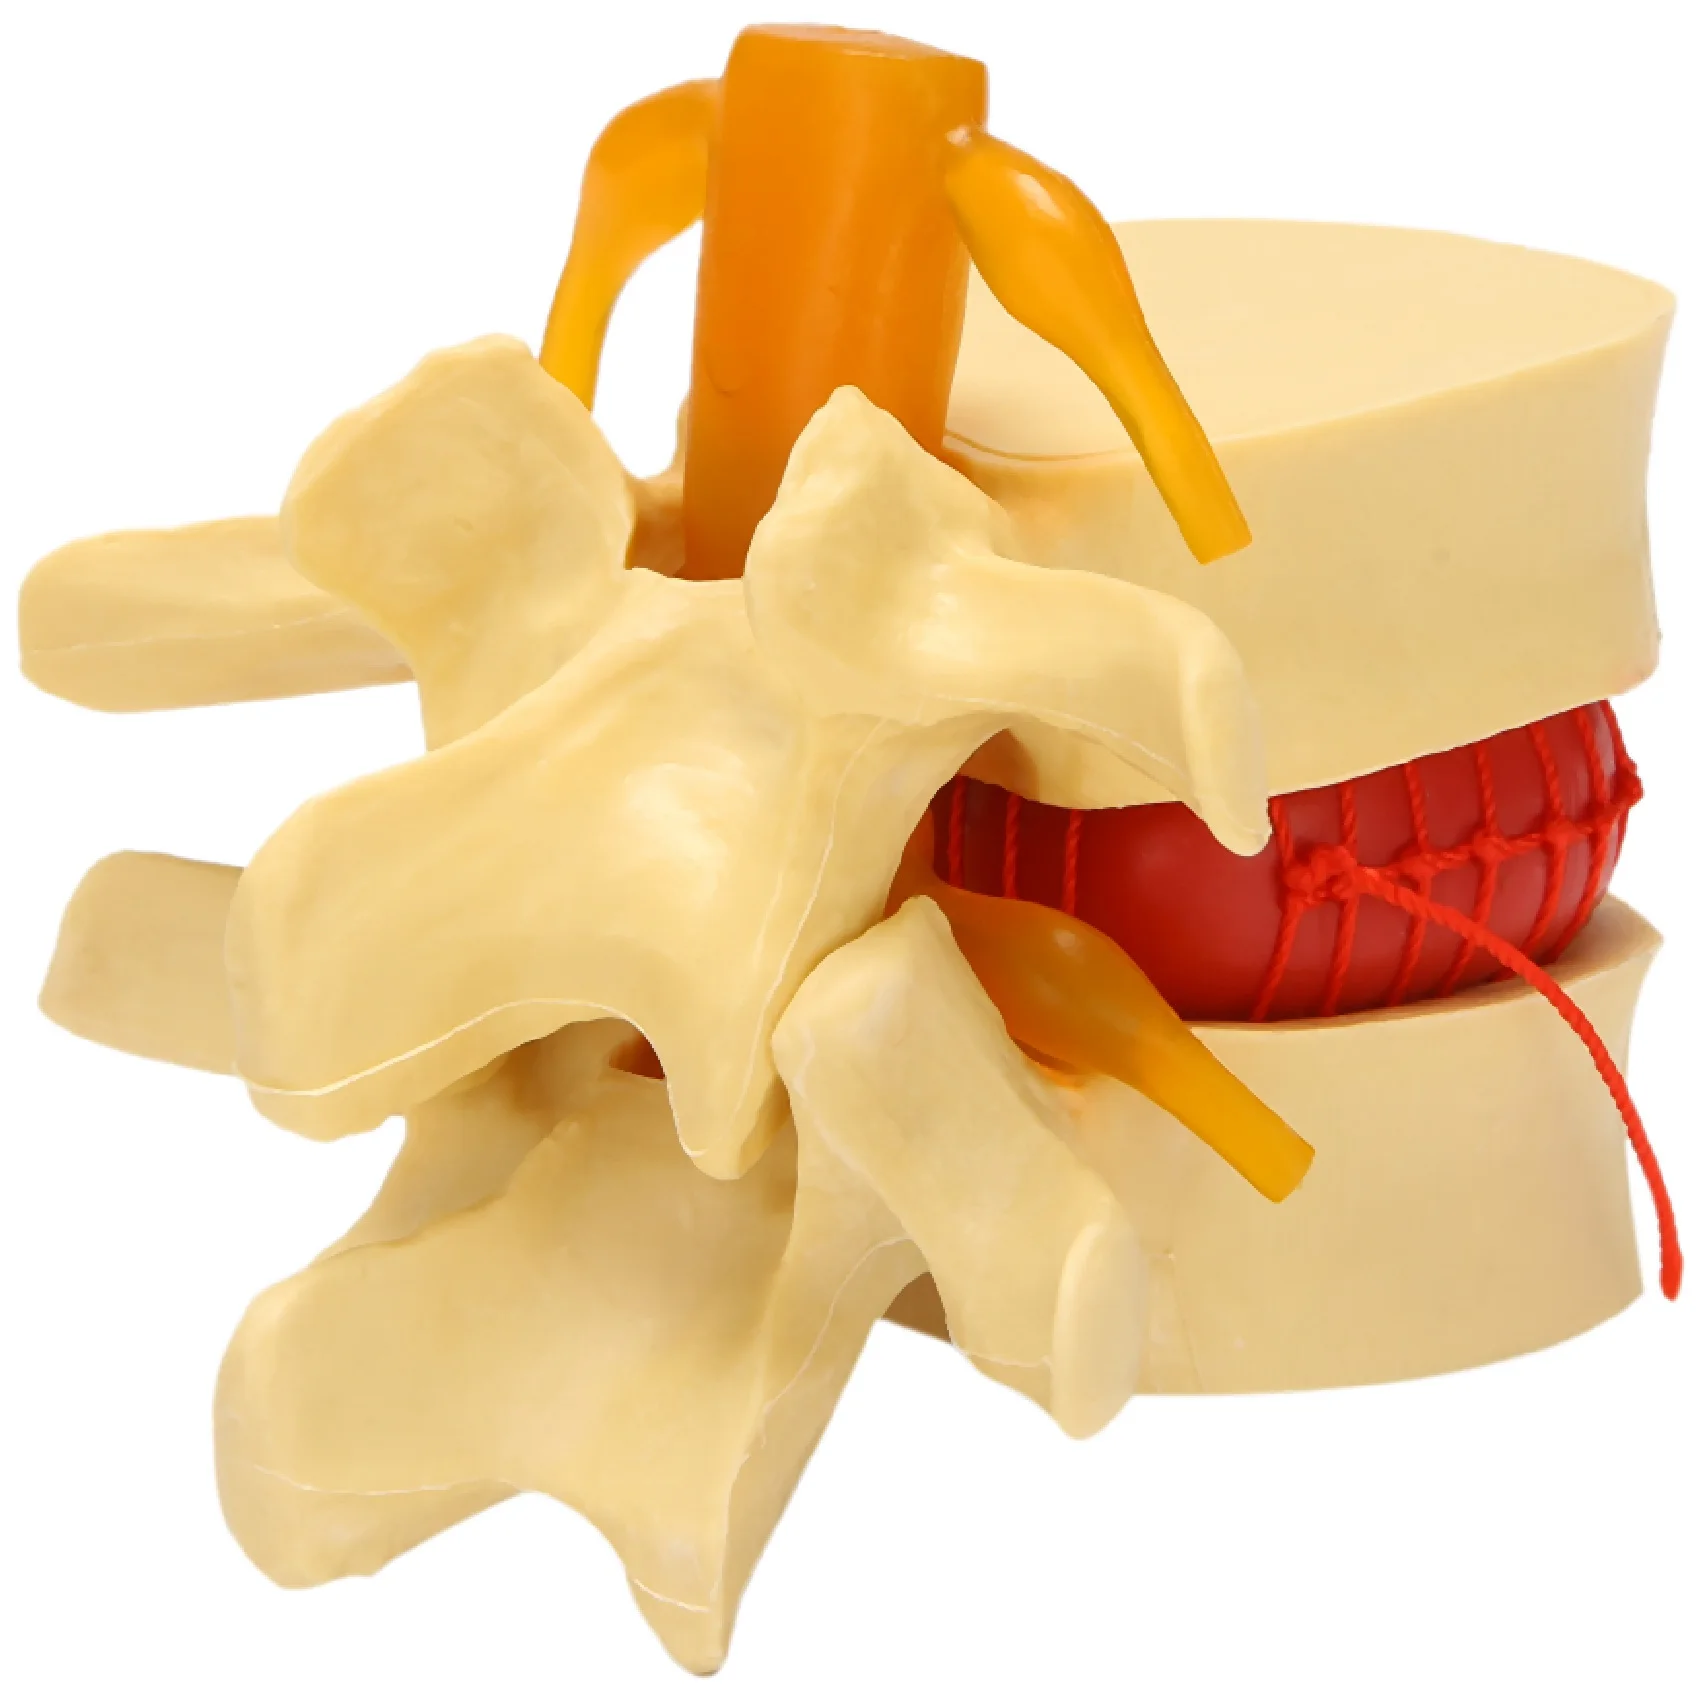 

Анатомический Поясничный диск, инструмент для обучения анатомии